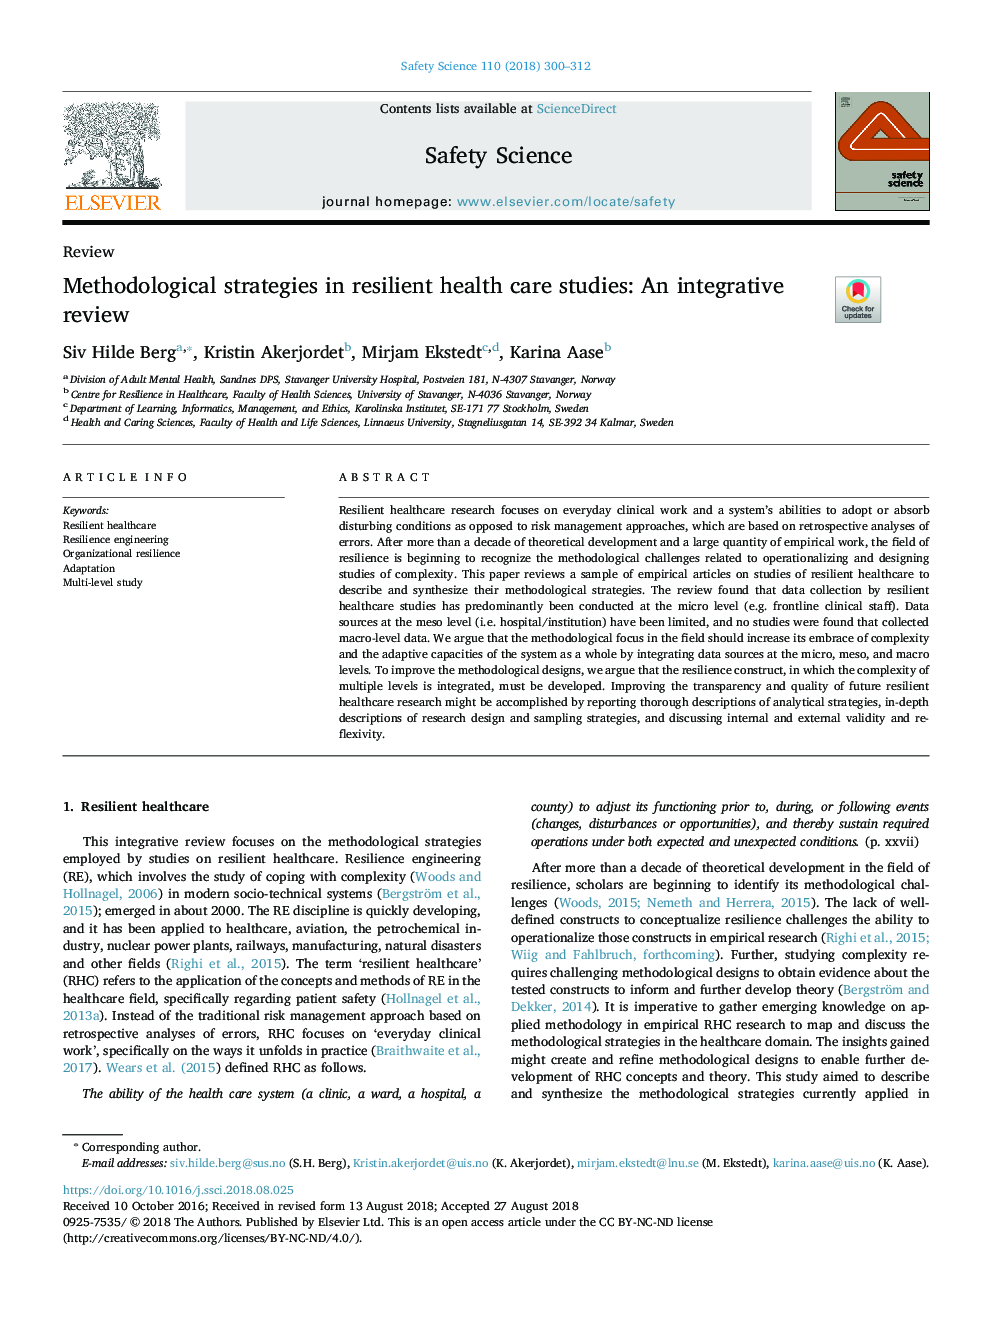 استراتژی های روش شناختی در مطالعات بهداشتی انعطاف پذیر: یک مرور جامع